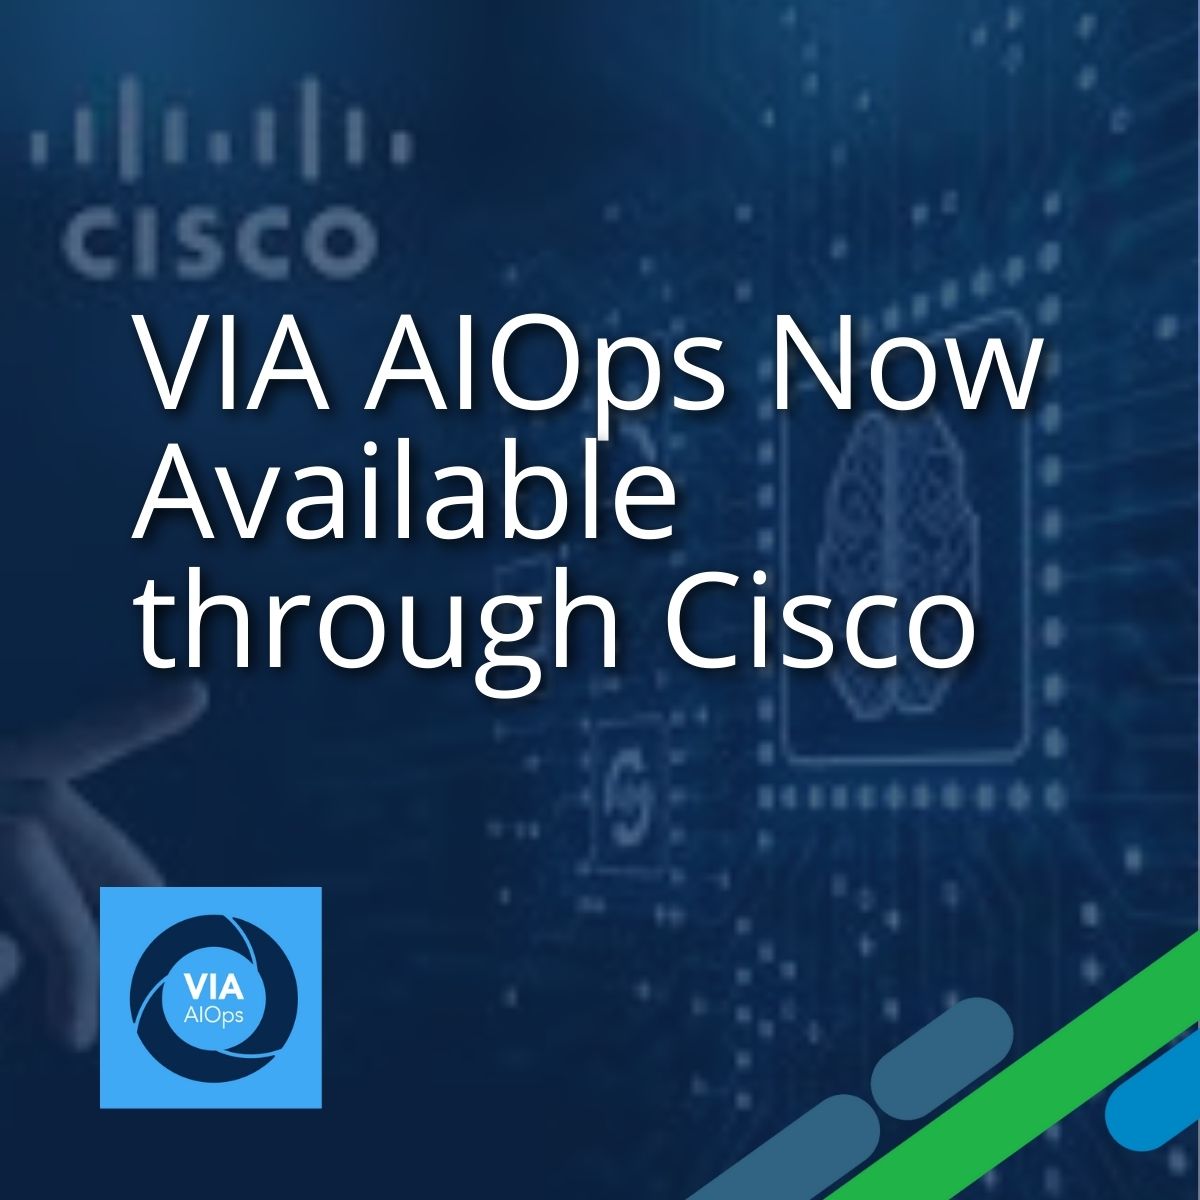 Via-AIOps now available through Cisco